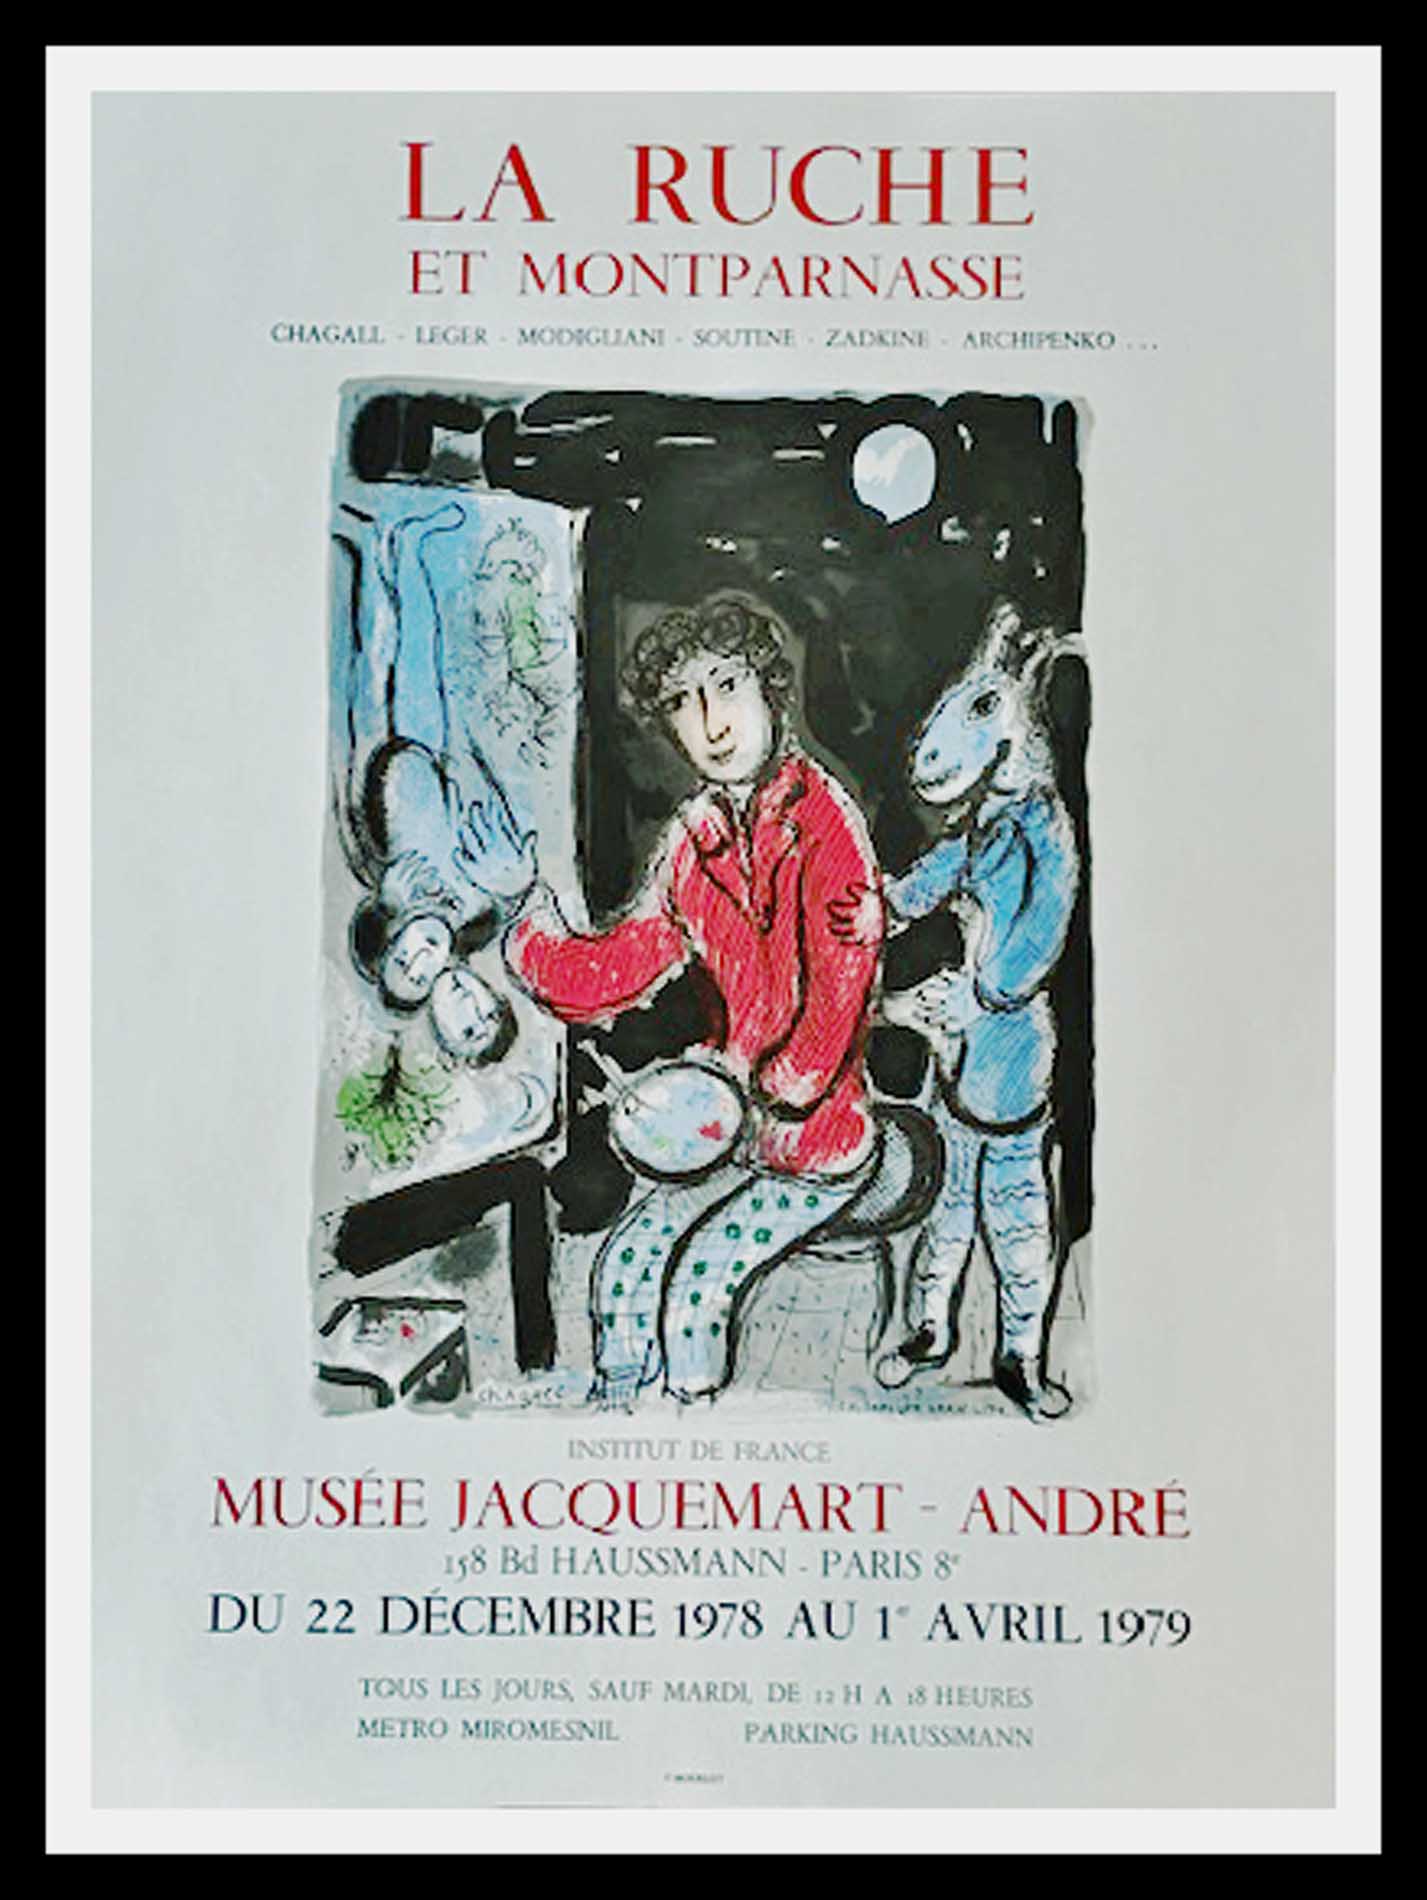 La ruche et Montparnasse Musée Jacquemart André 74.5 x 54.5 centimètres condition A+ 1979 Imprimerie MOURLOT